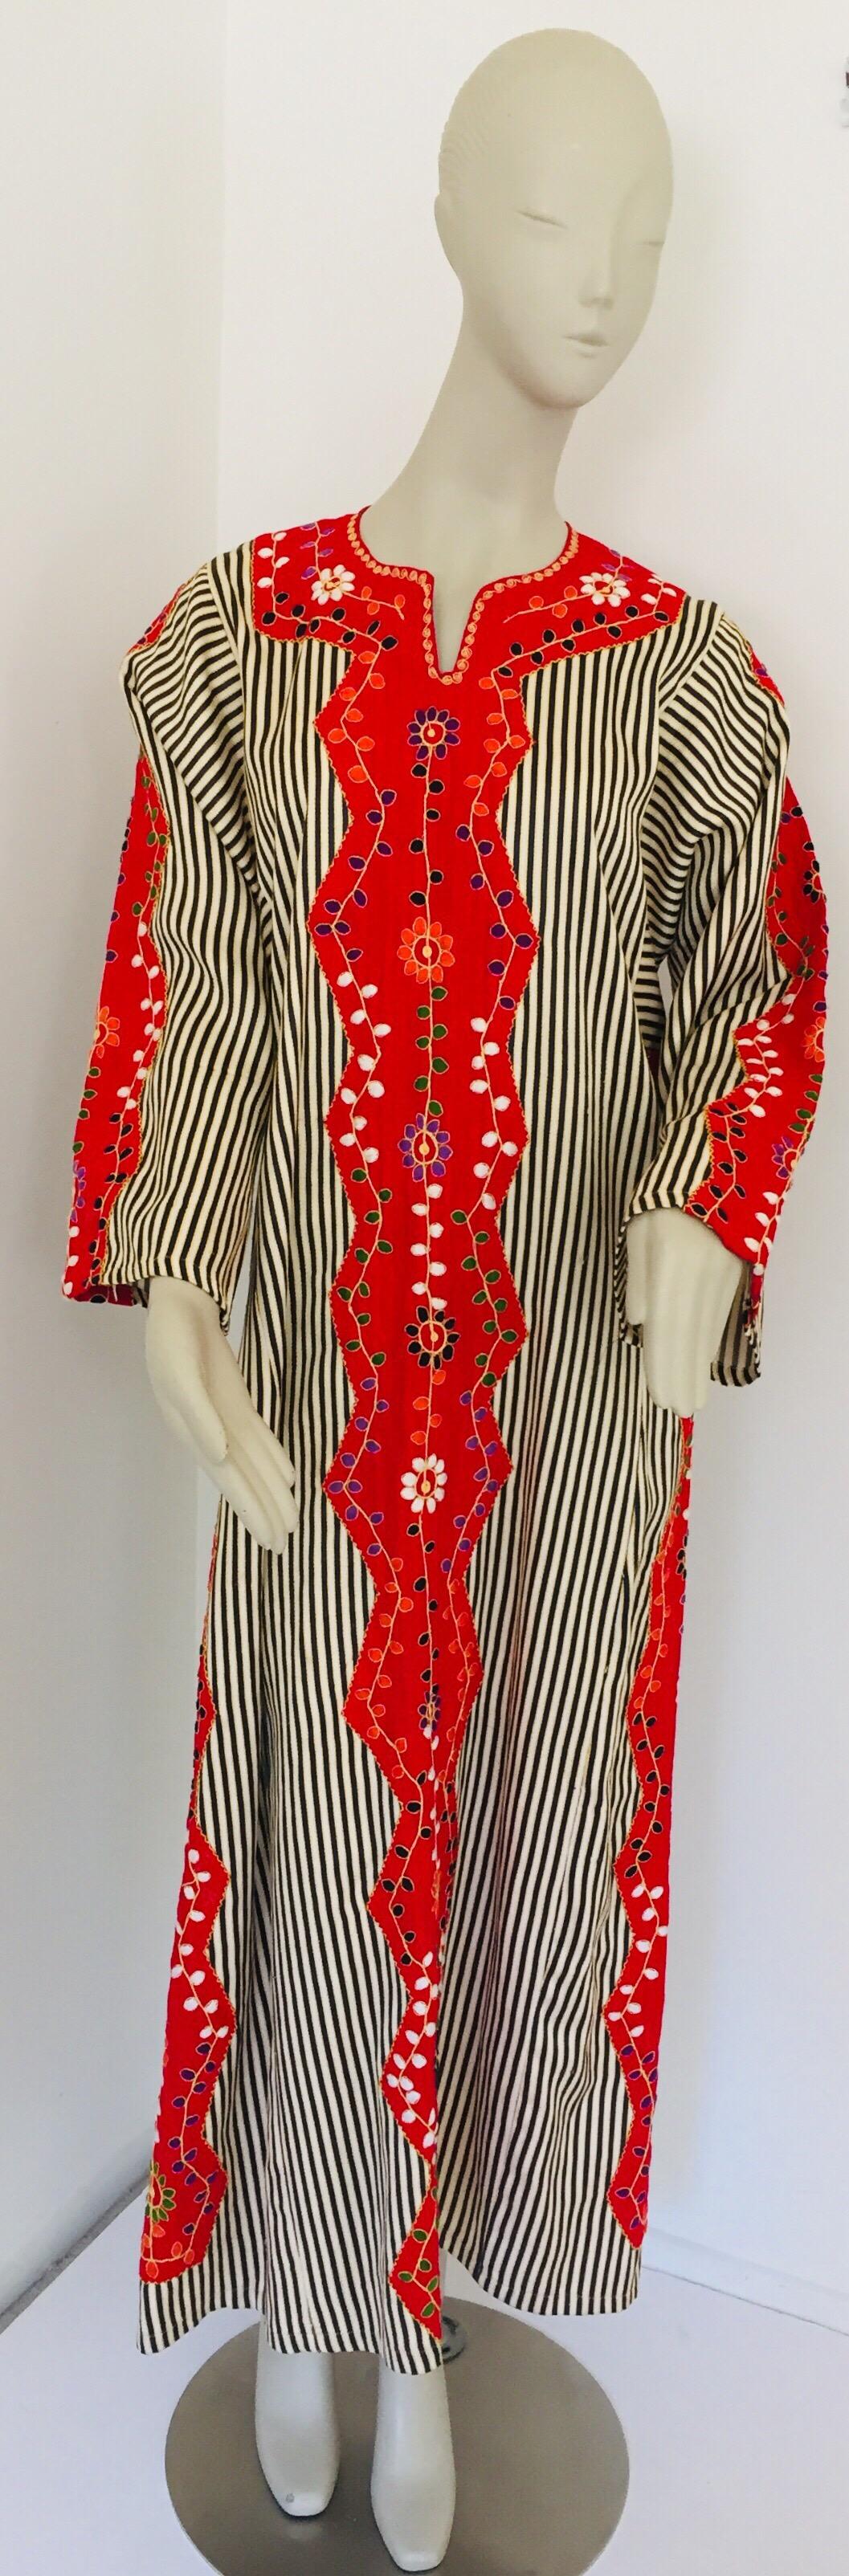 Kaftan vintage du Moyen-Orient, robe longue en coton rouge brodé et rayé.
Cette robe maxi kaftan chic de style bohème est brodée et embellie à la main. 
Il s'agit d'un tissu de coton léger et confortable qui s'enfile facilement.
Kaftan ethnique